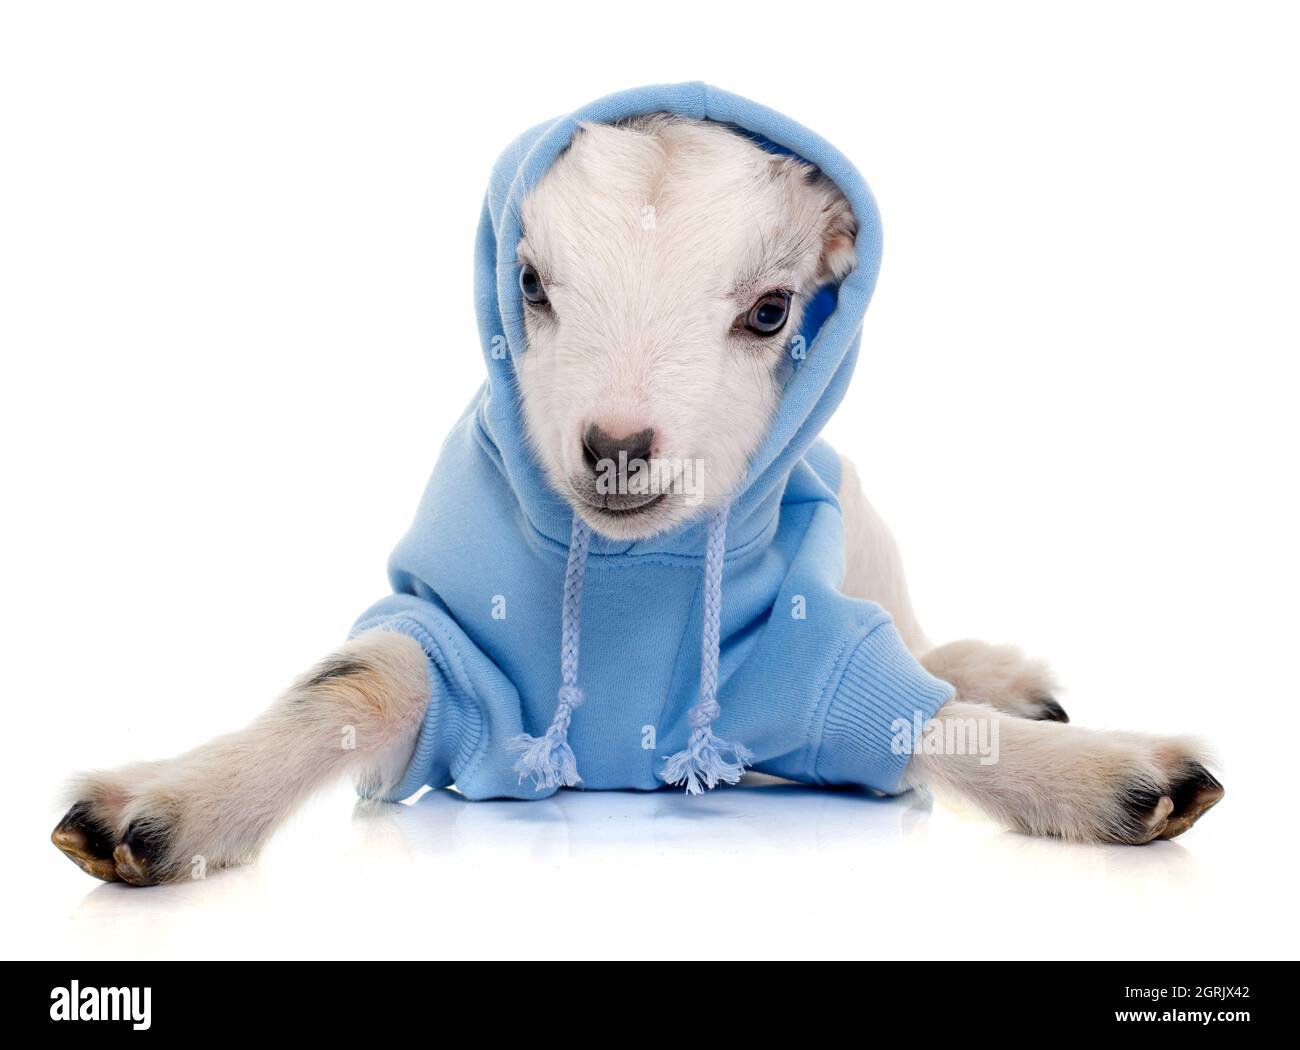 Portrait de l'agneau dans des vêtements pour animaux assis sur fond blanc Banque D'Images